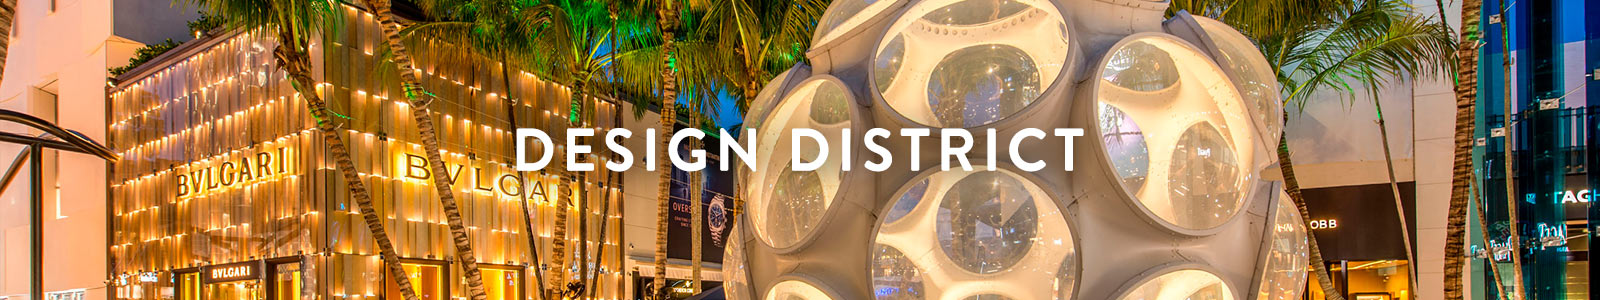 DesignDistrict-banner1